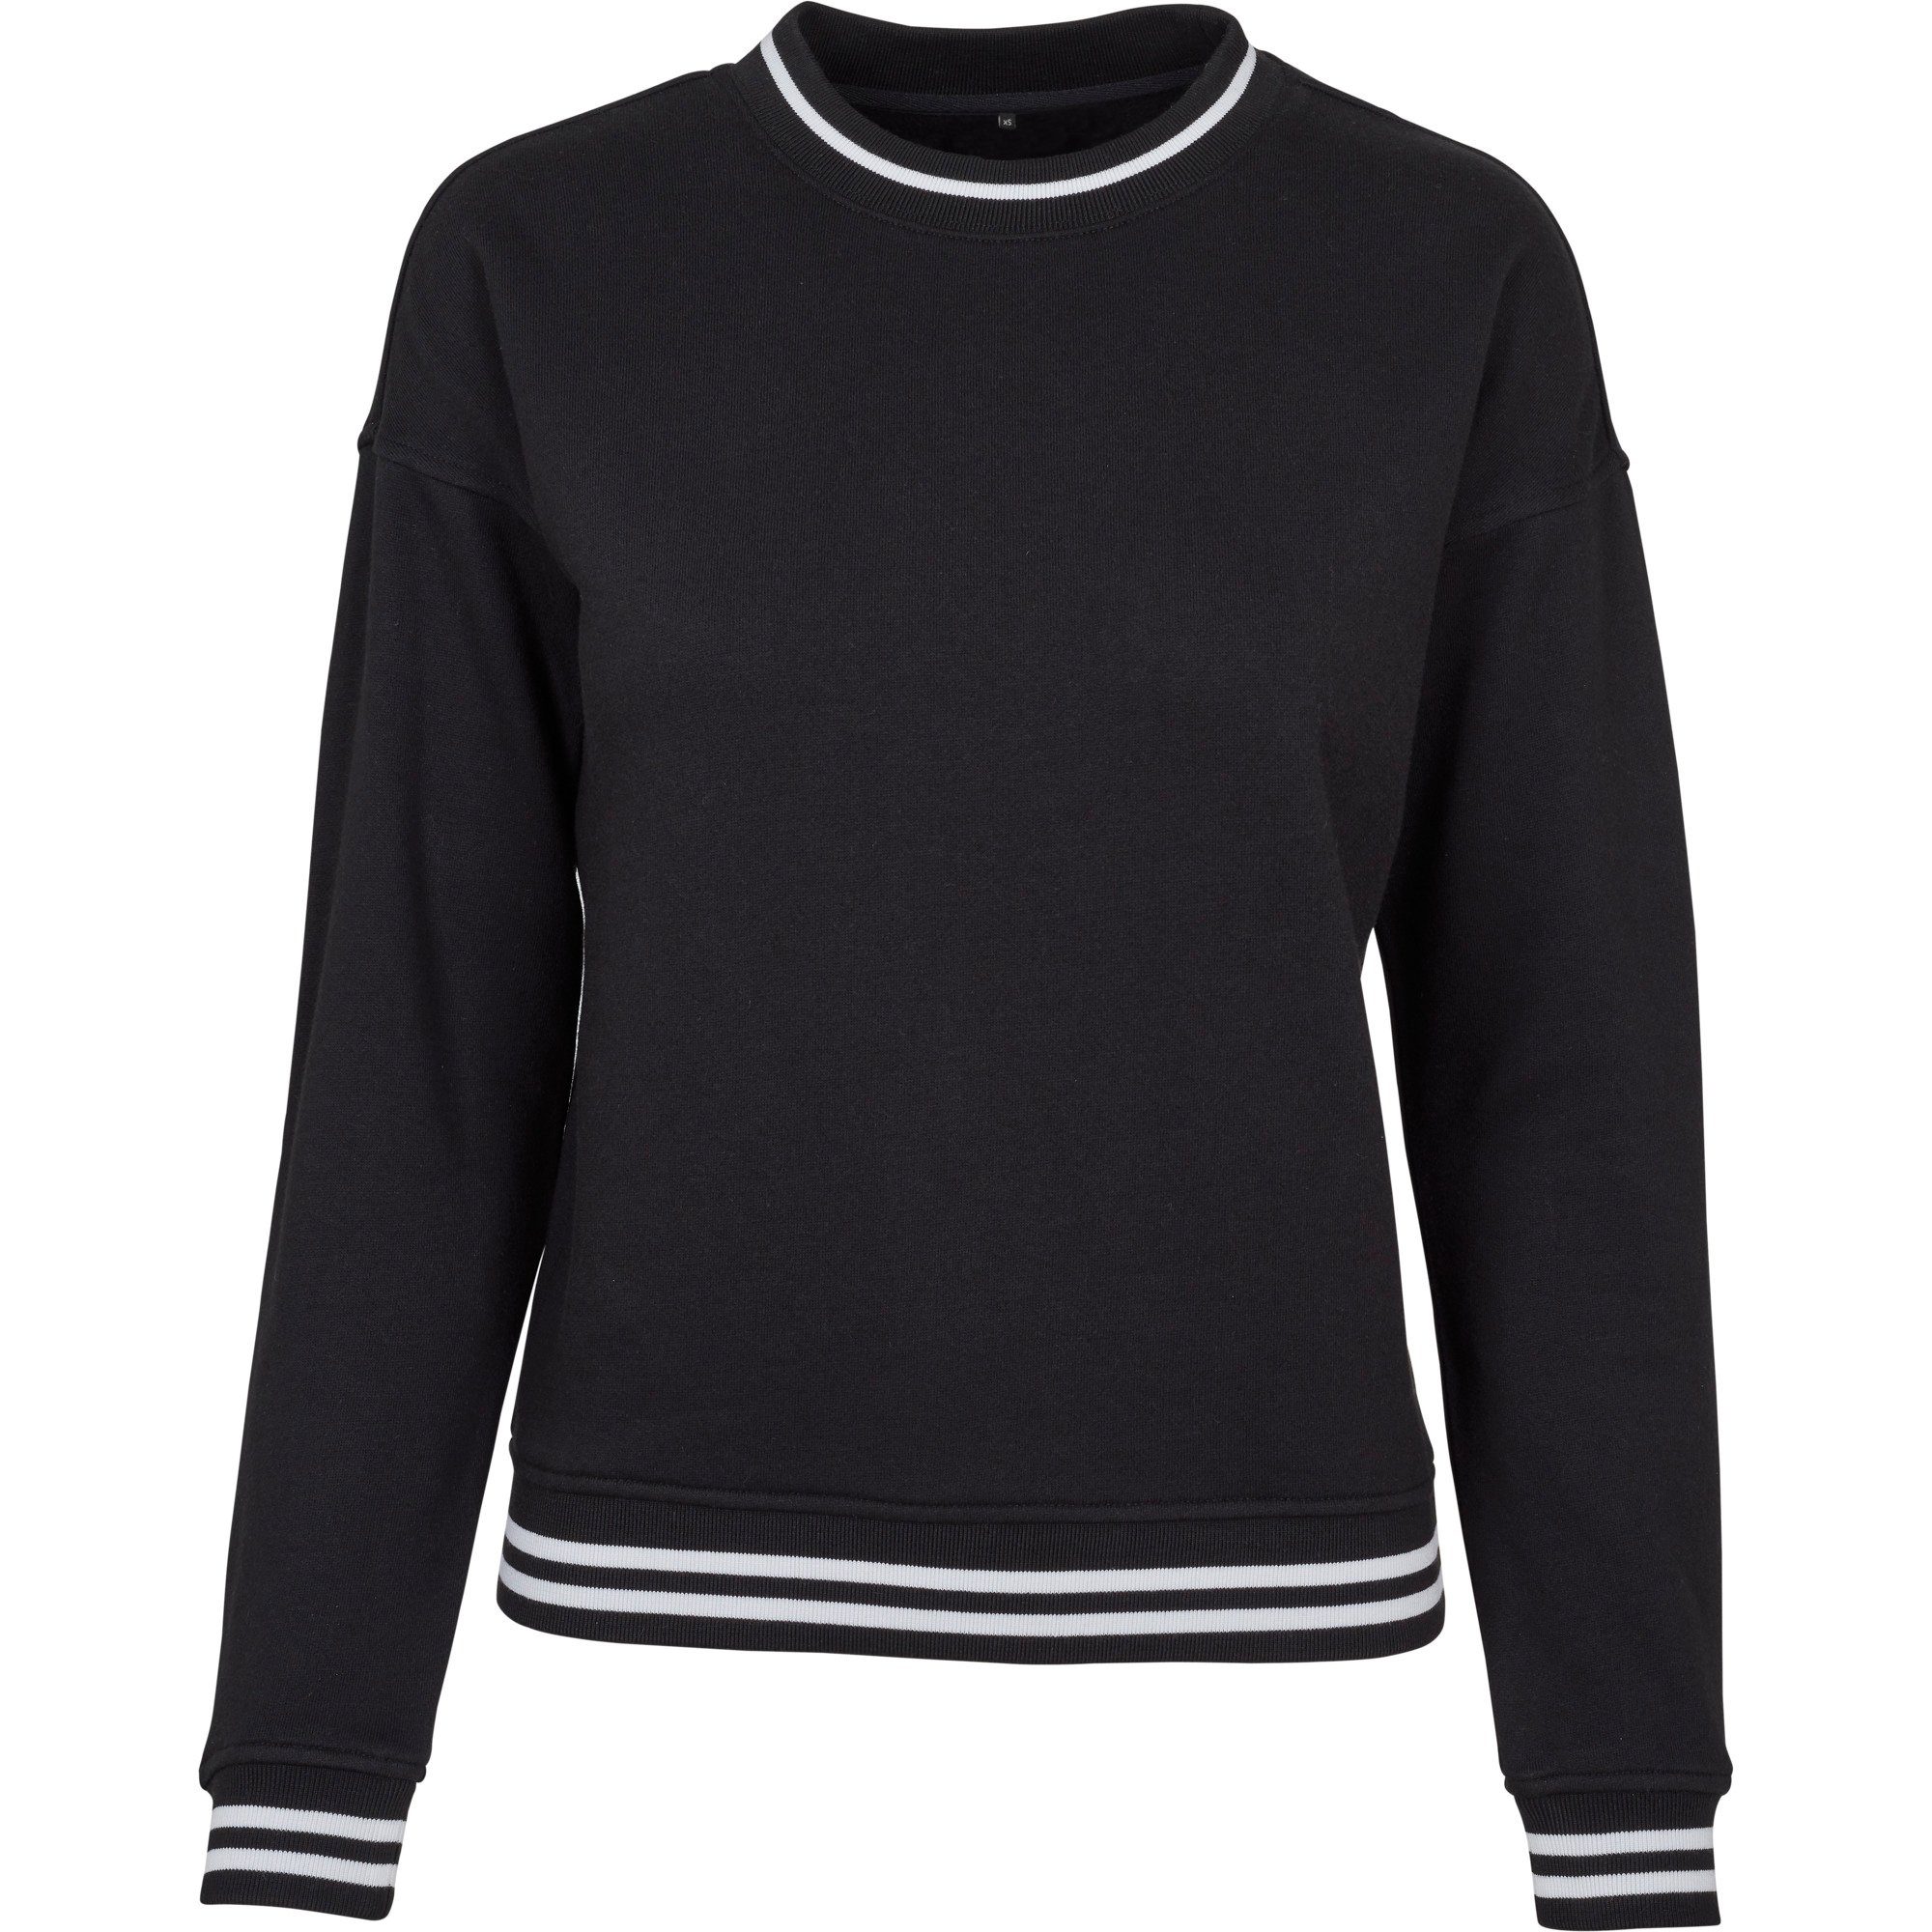 Build Your Brand Sweater Damen / Mädchen Crewneck Sweatshirt in College Optik XS bis 5XL schwarz